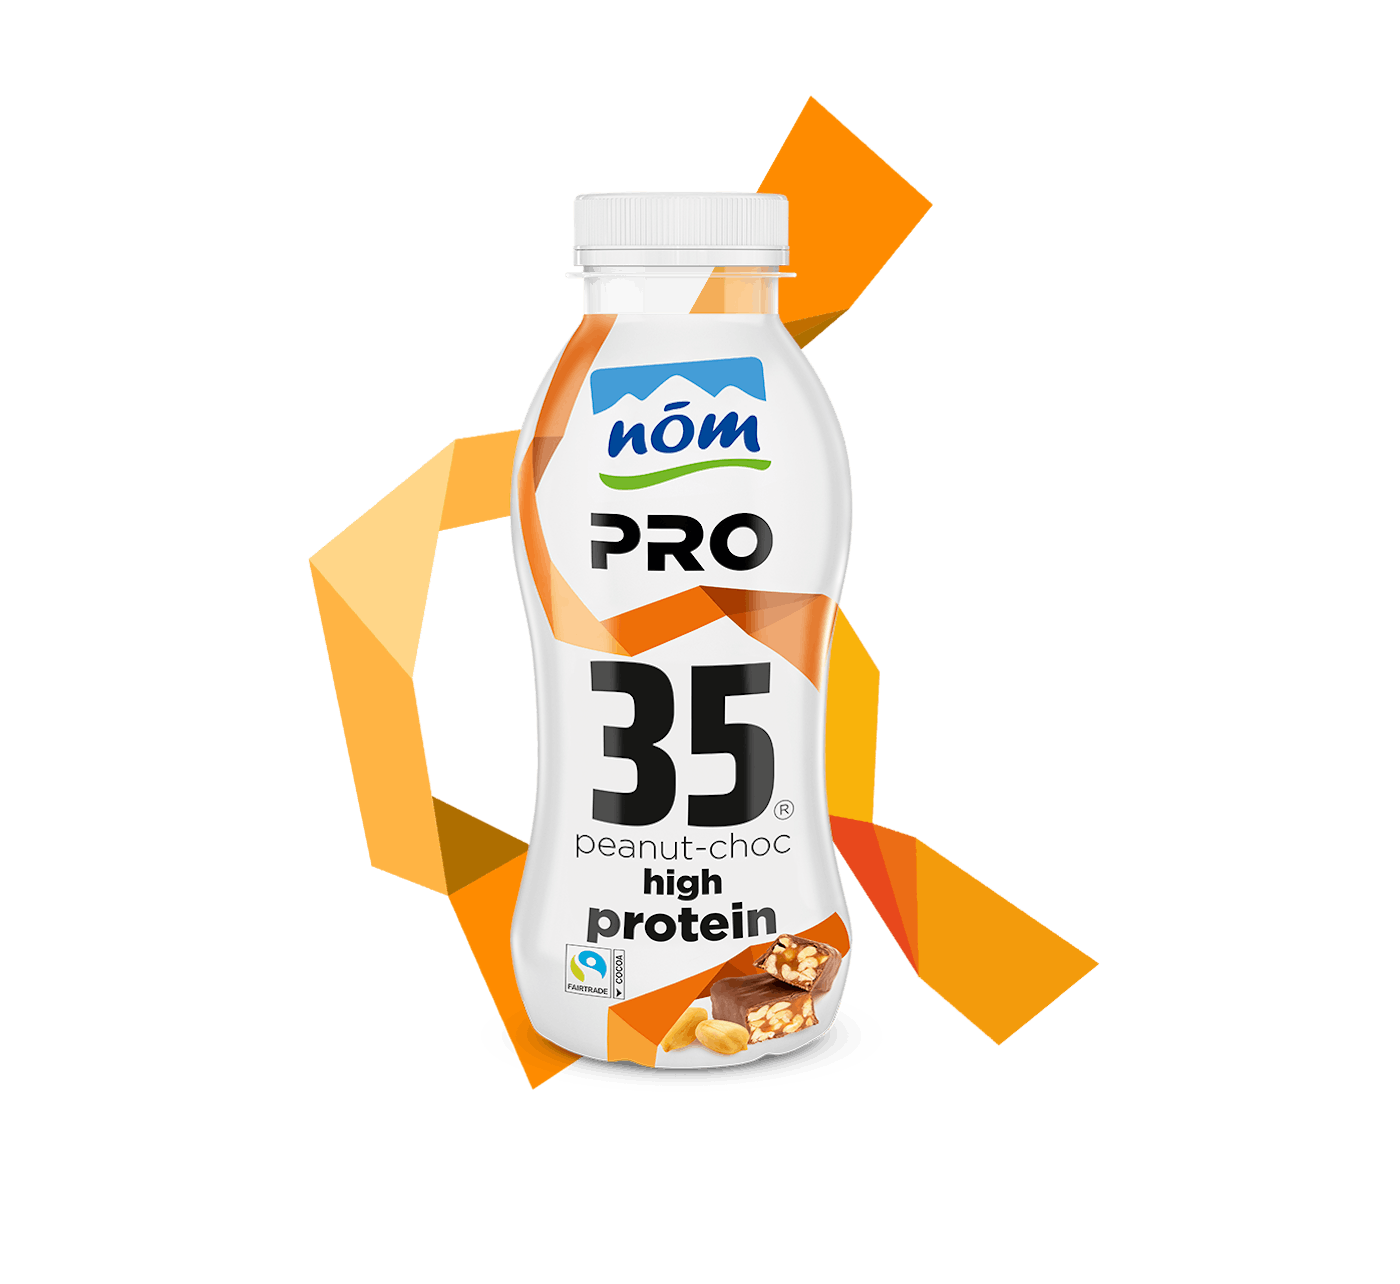 NÖM PRO Proteindrink Peanut Choc in der 350 g Flasche mit Banderole